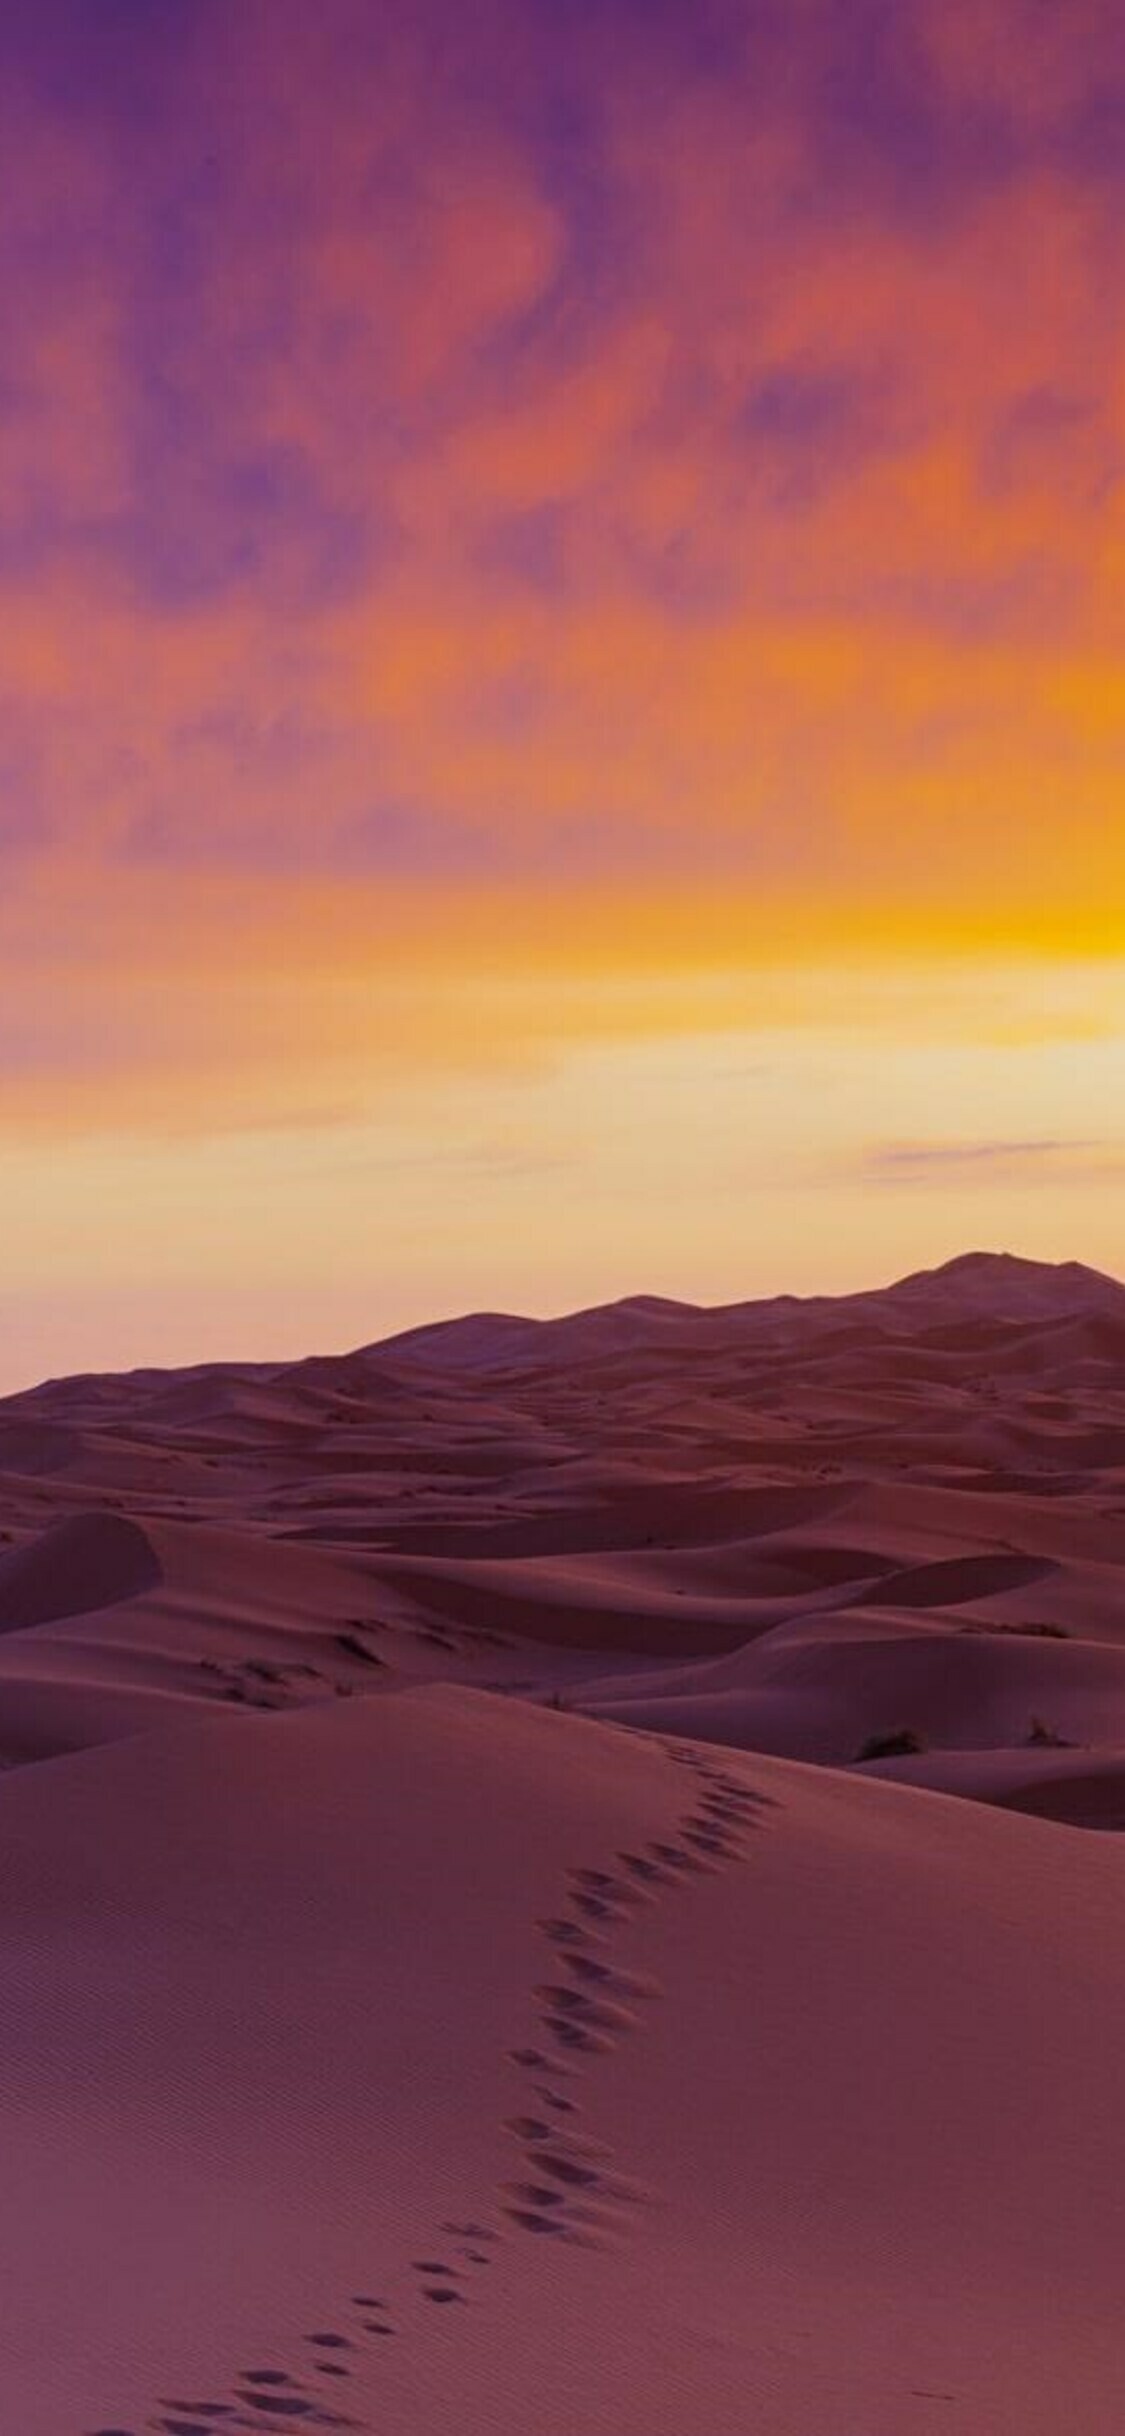 Desert: Sahara, Sand Dunes, Natural landscape. 1130x2440 HD Wallpaper.